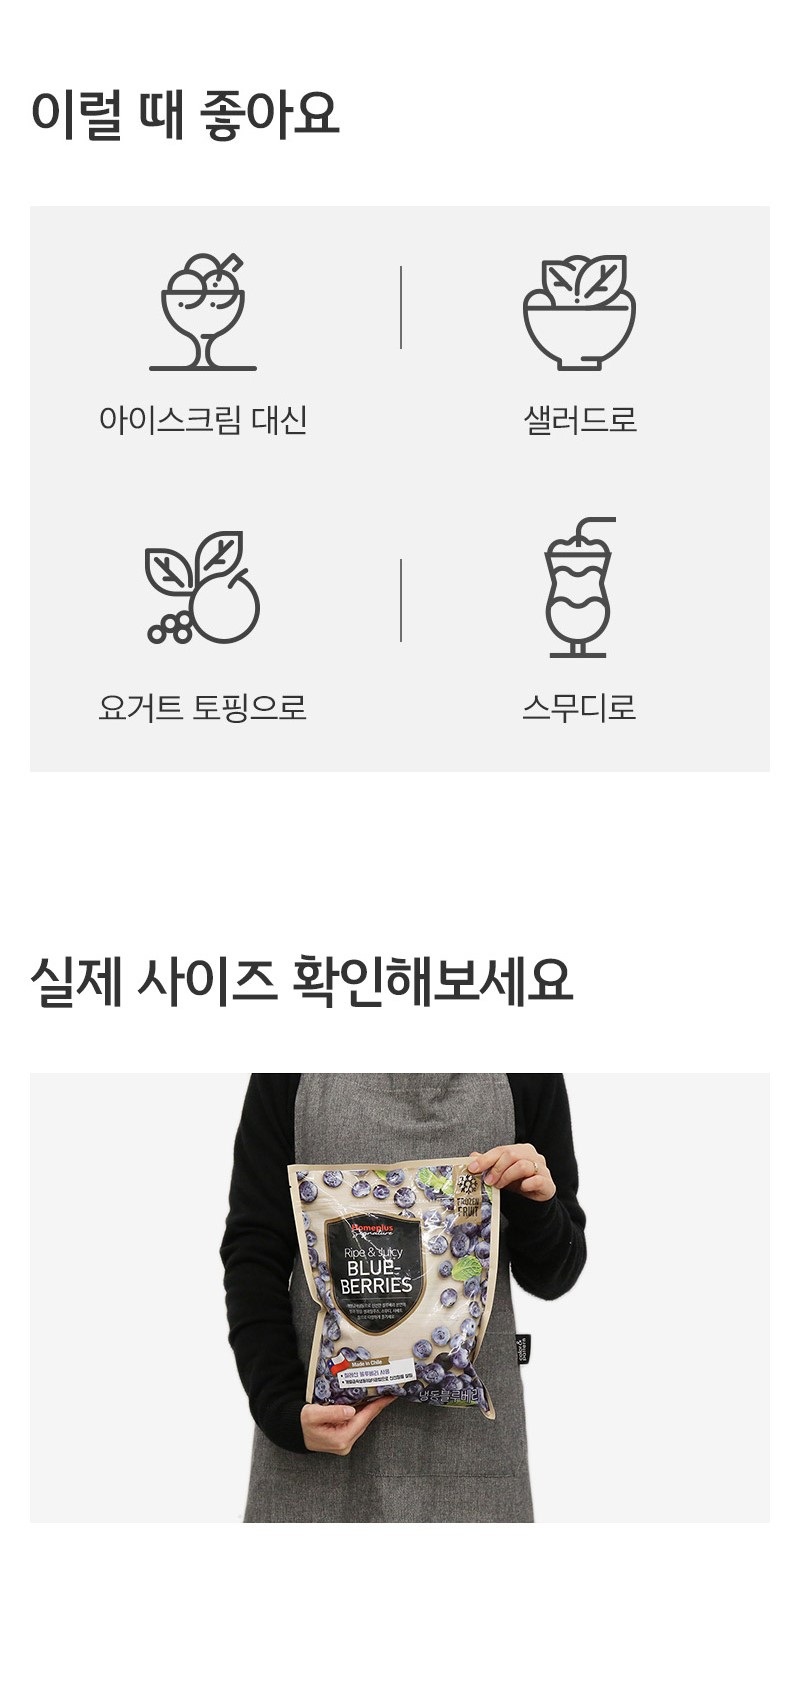 韓國食品-[홈플러스시그니처] 냉동 블루베리 1KG